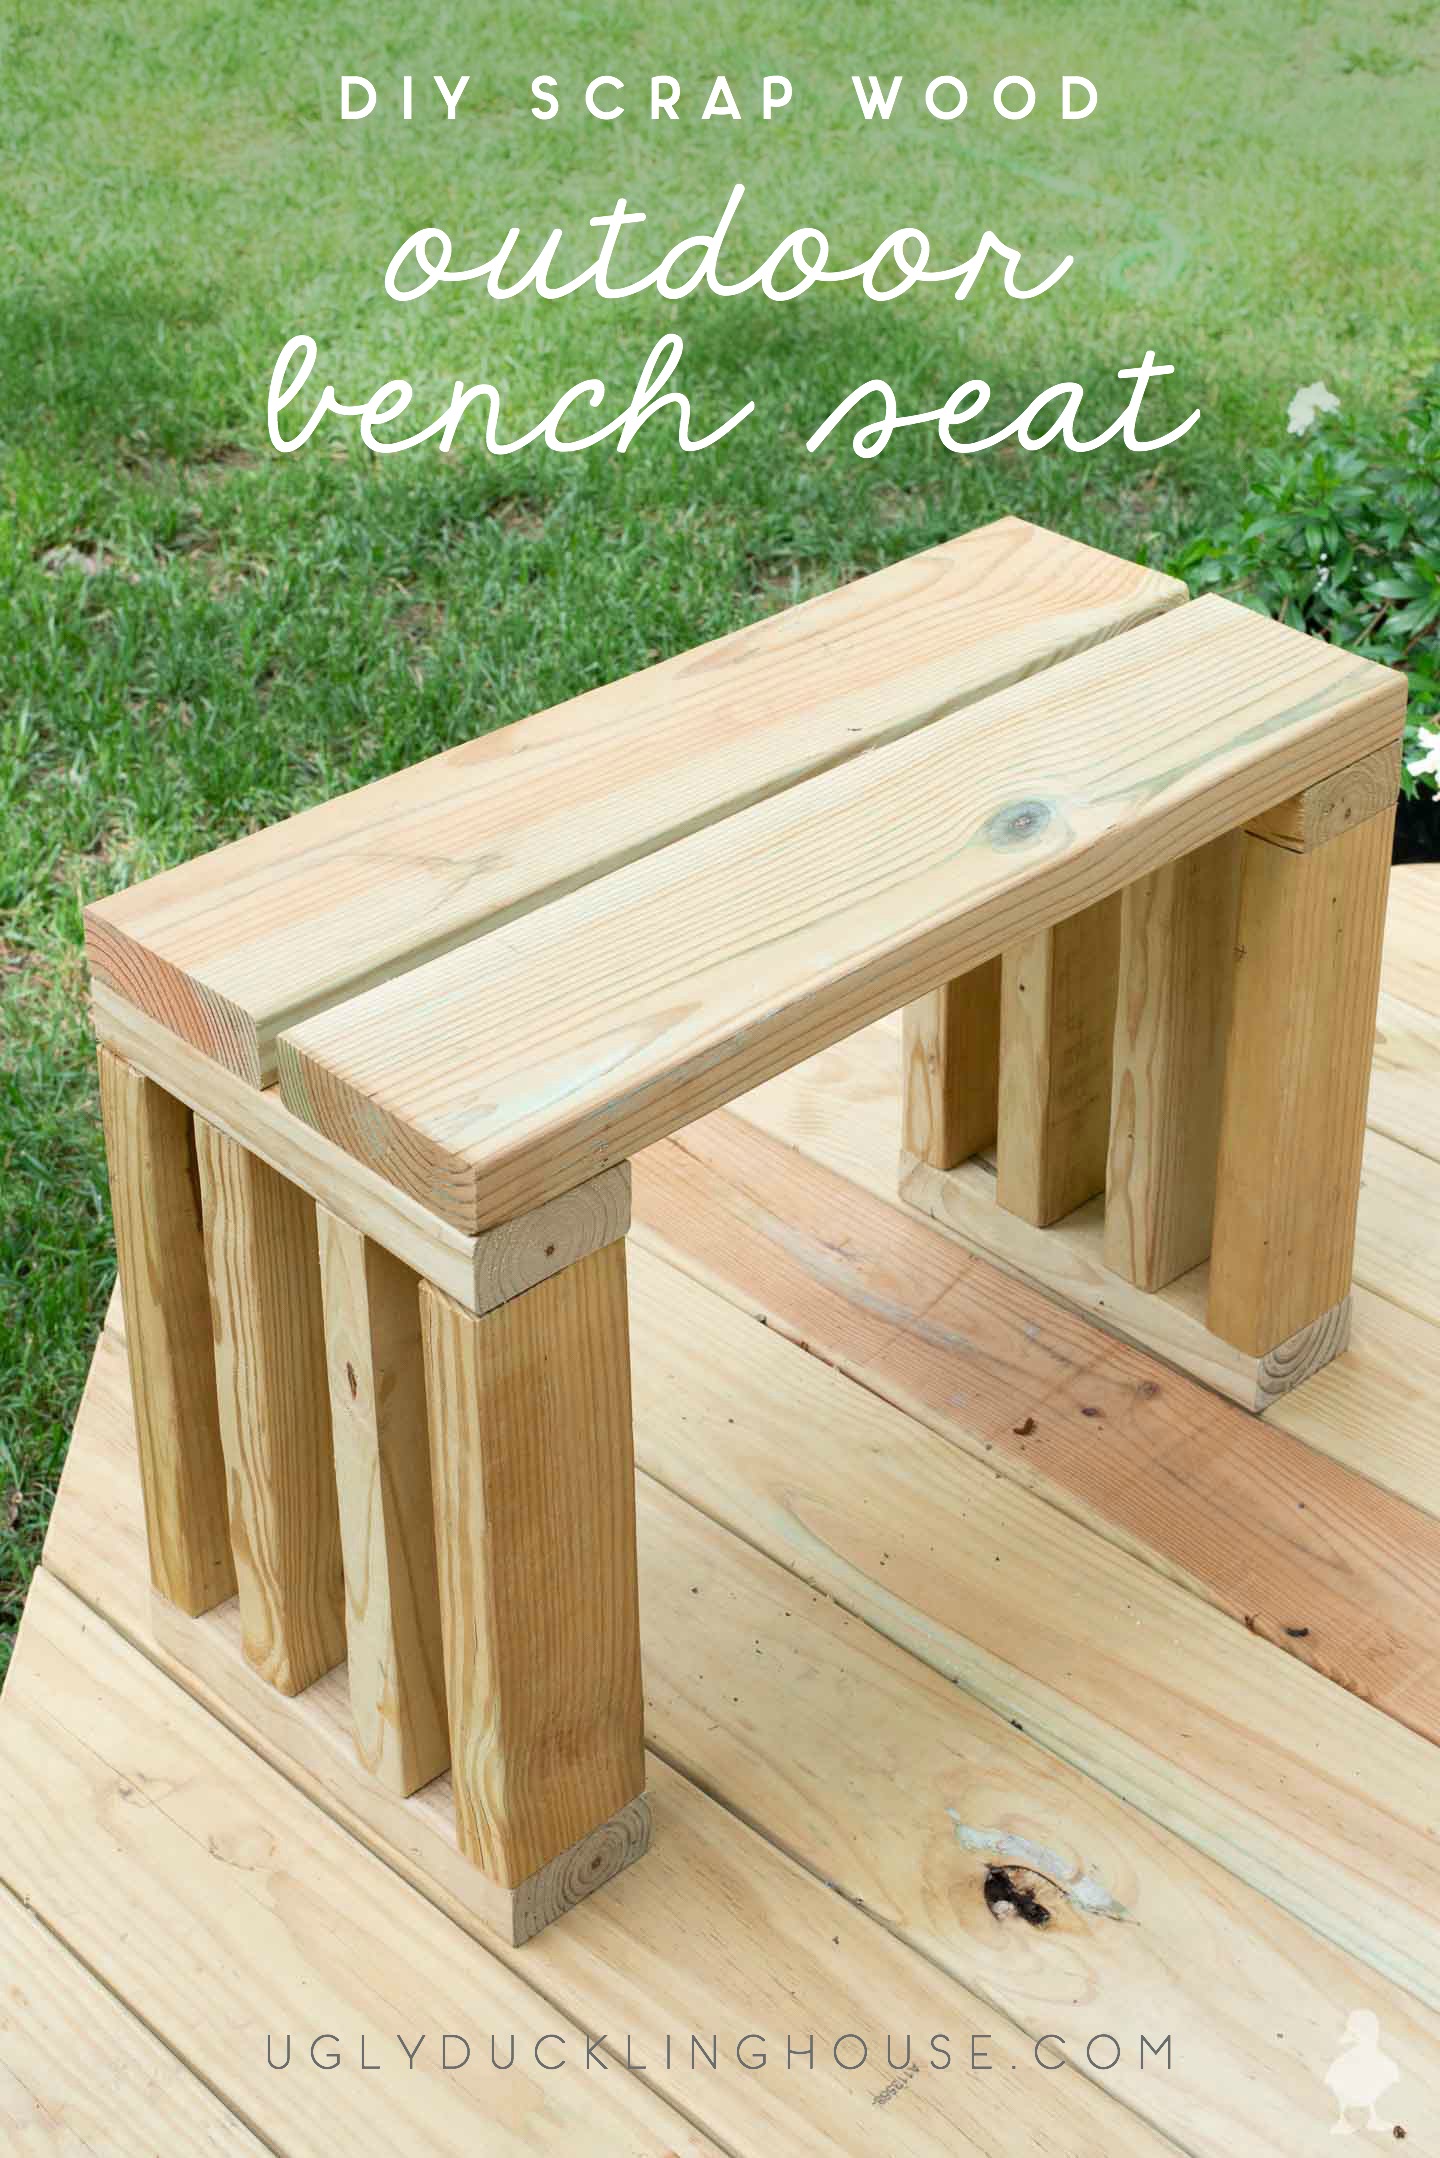 Scrap Wood Outdoor Bench Seat | DIY garden bench plans • Ugly Duckling